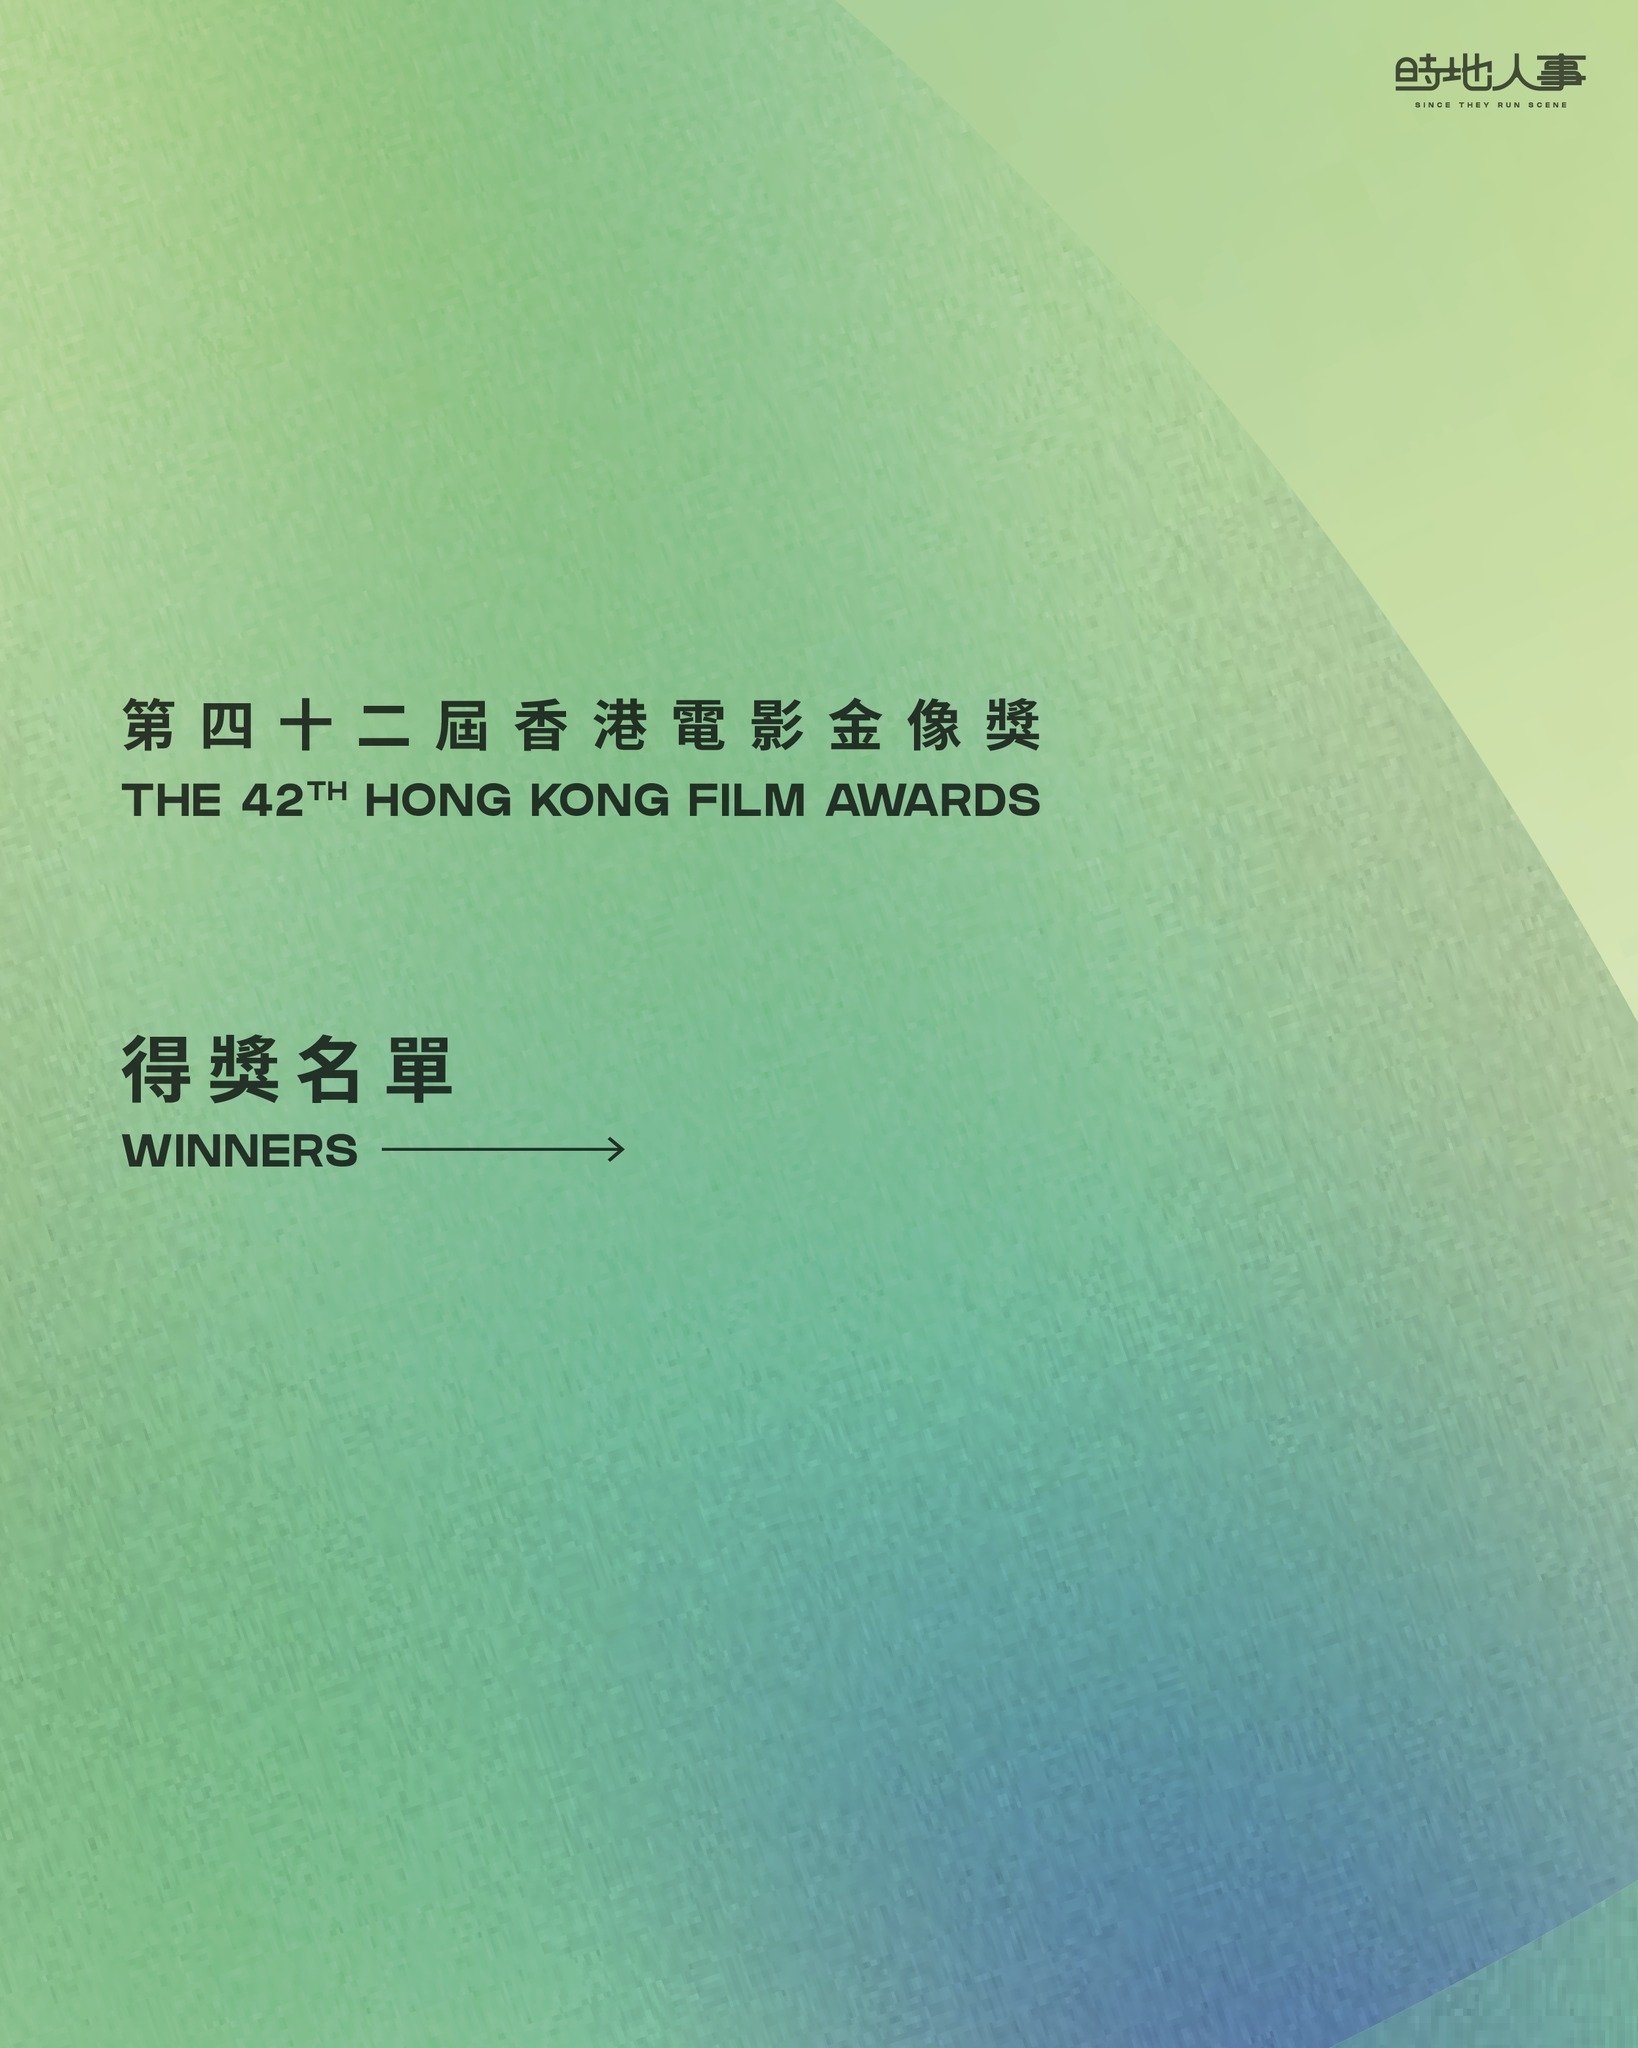 #第42屆香港電影金像獎 完整得獎名單✨
再次恭喜晒所有得獎電影及各位電影工作者🎉

#金像獎 #42ndHongKongFilmAwards #時地人事 #sincetheyrunscene